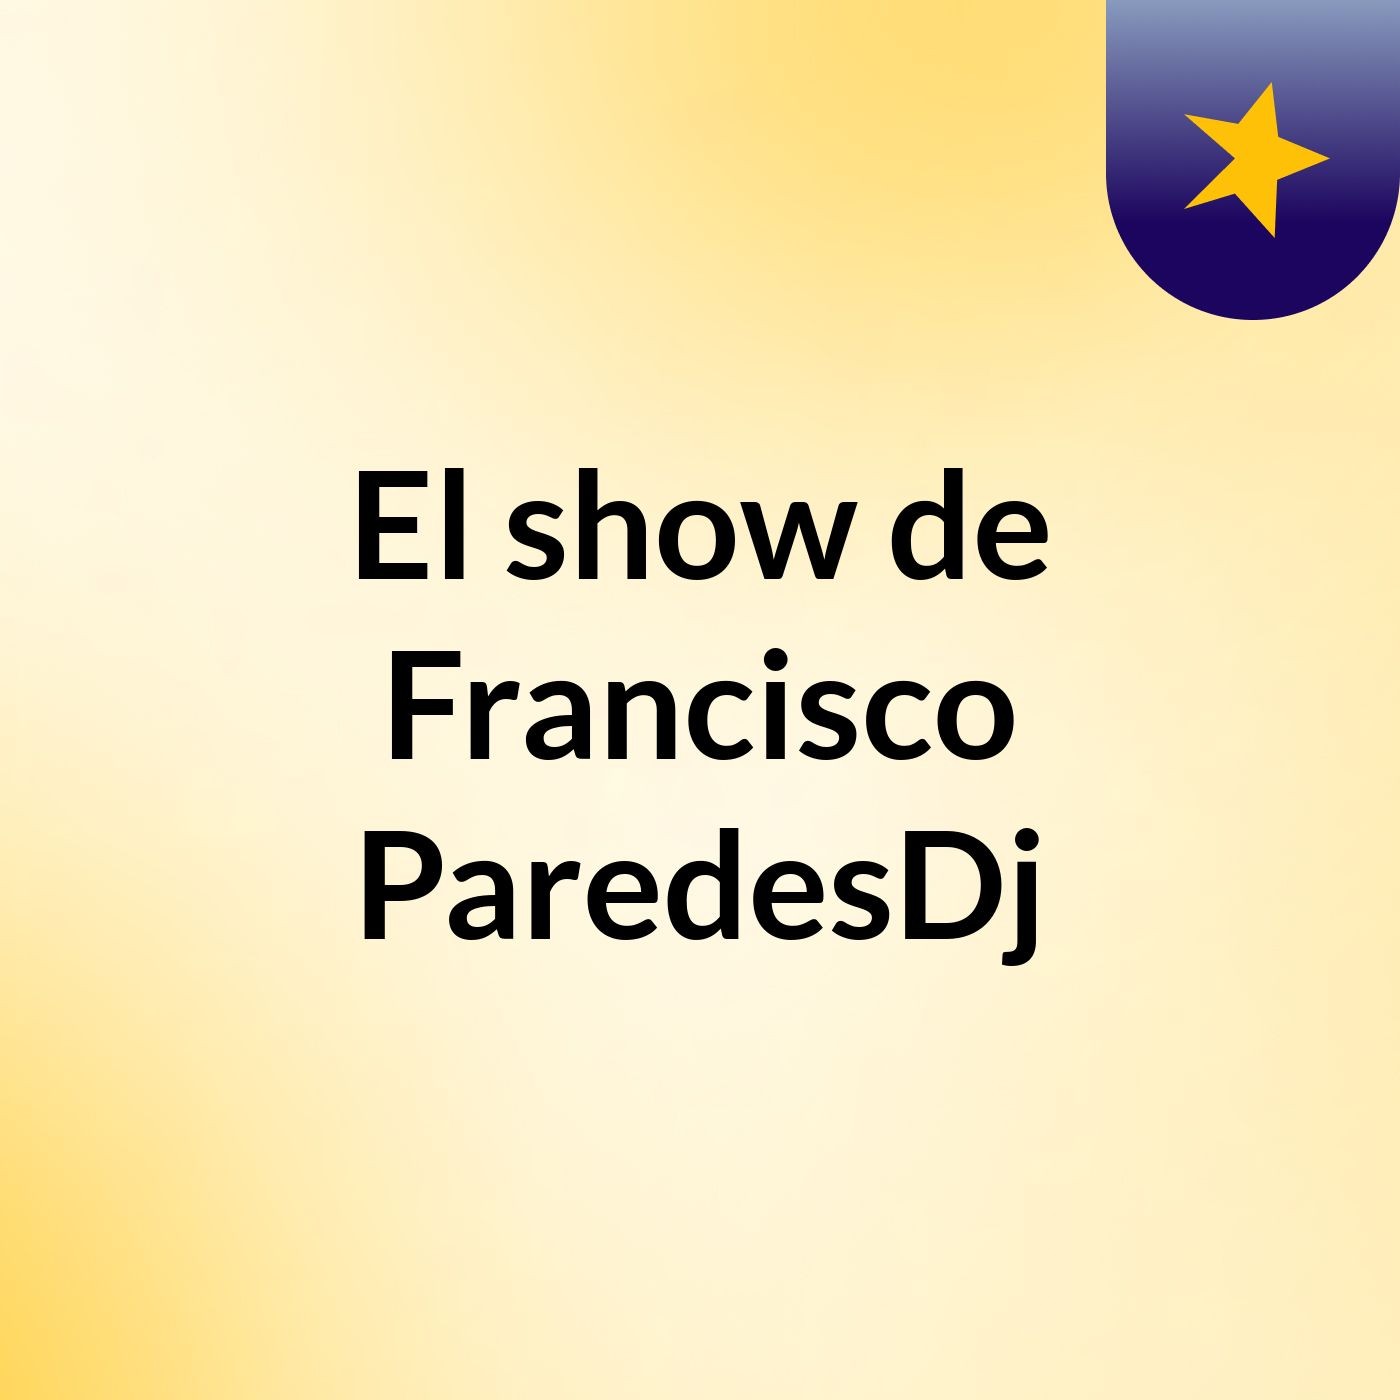 El show de Francisco ParedesDj